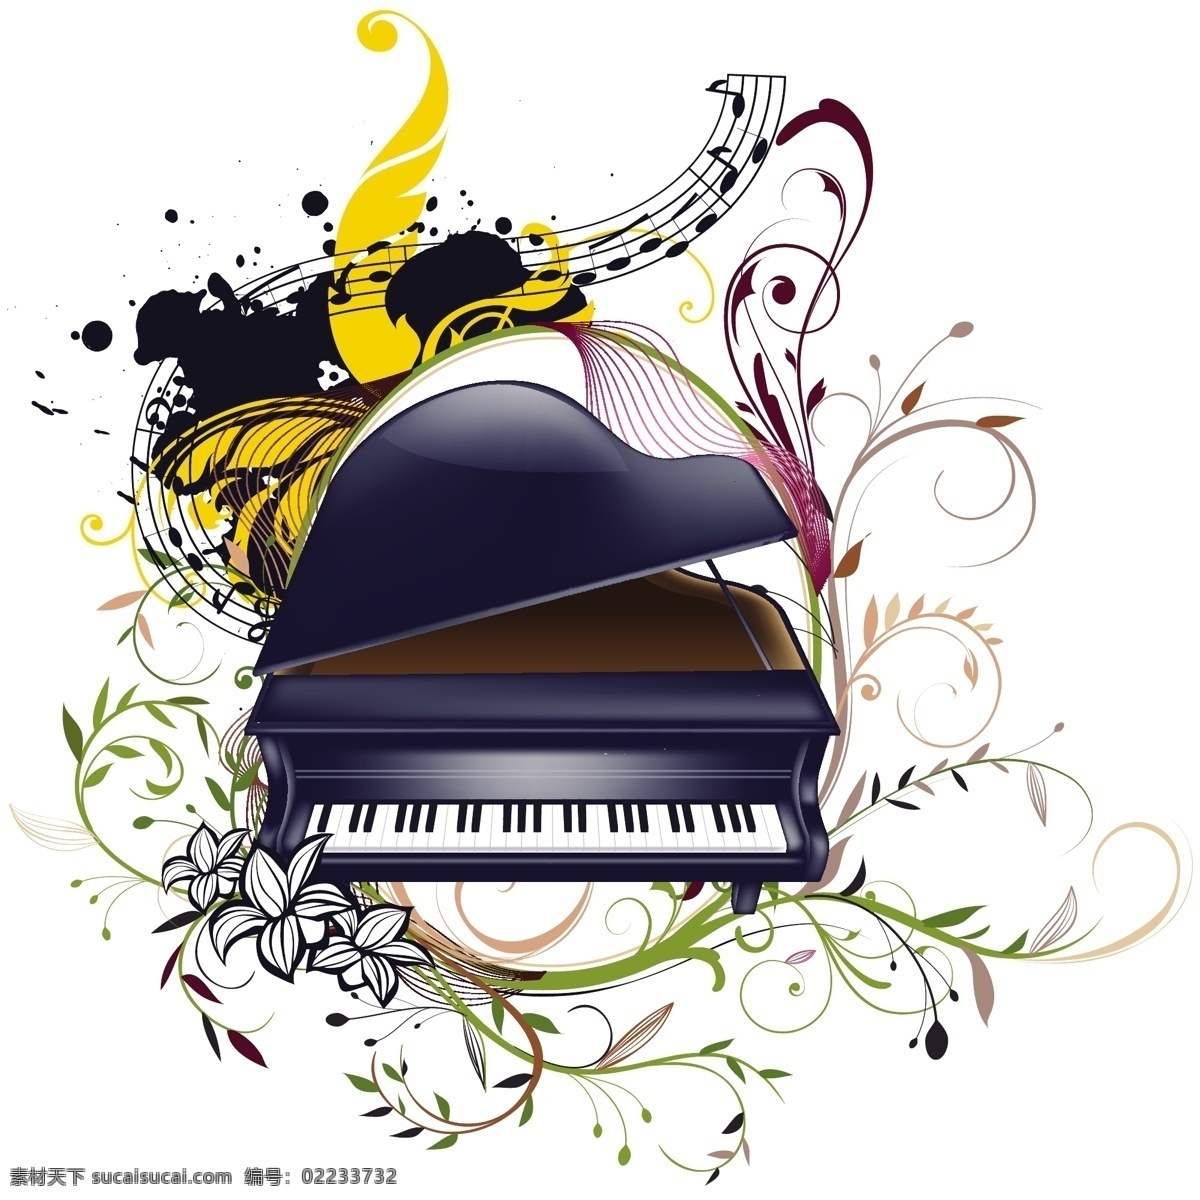 音乐免费下载 矢量图 文化艺术 矢量 音乐 音乐矢量图 元素 其他矢量图